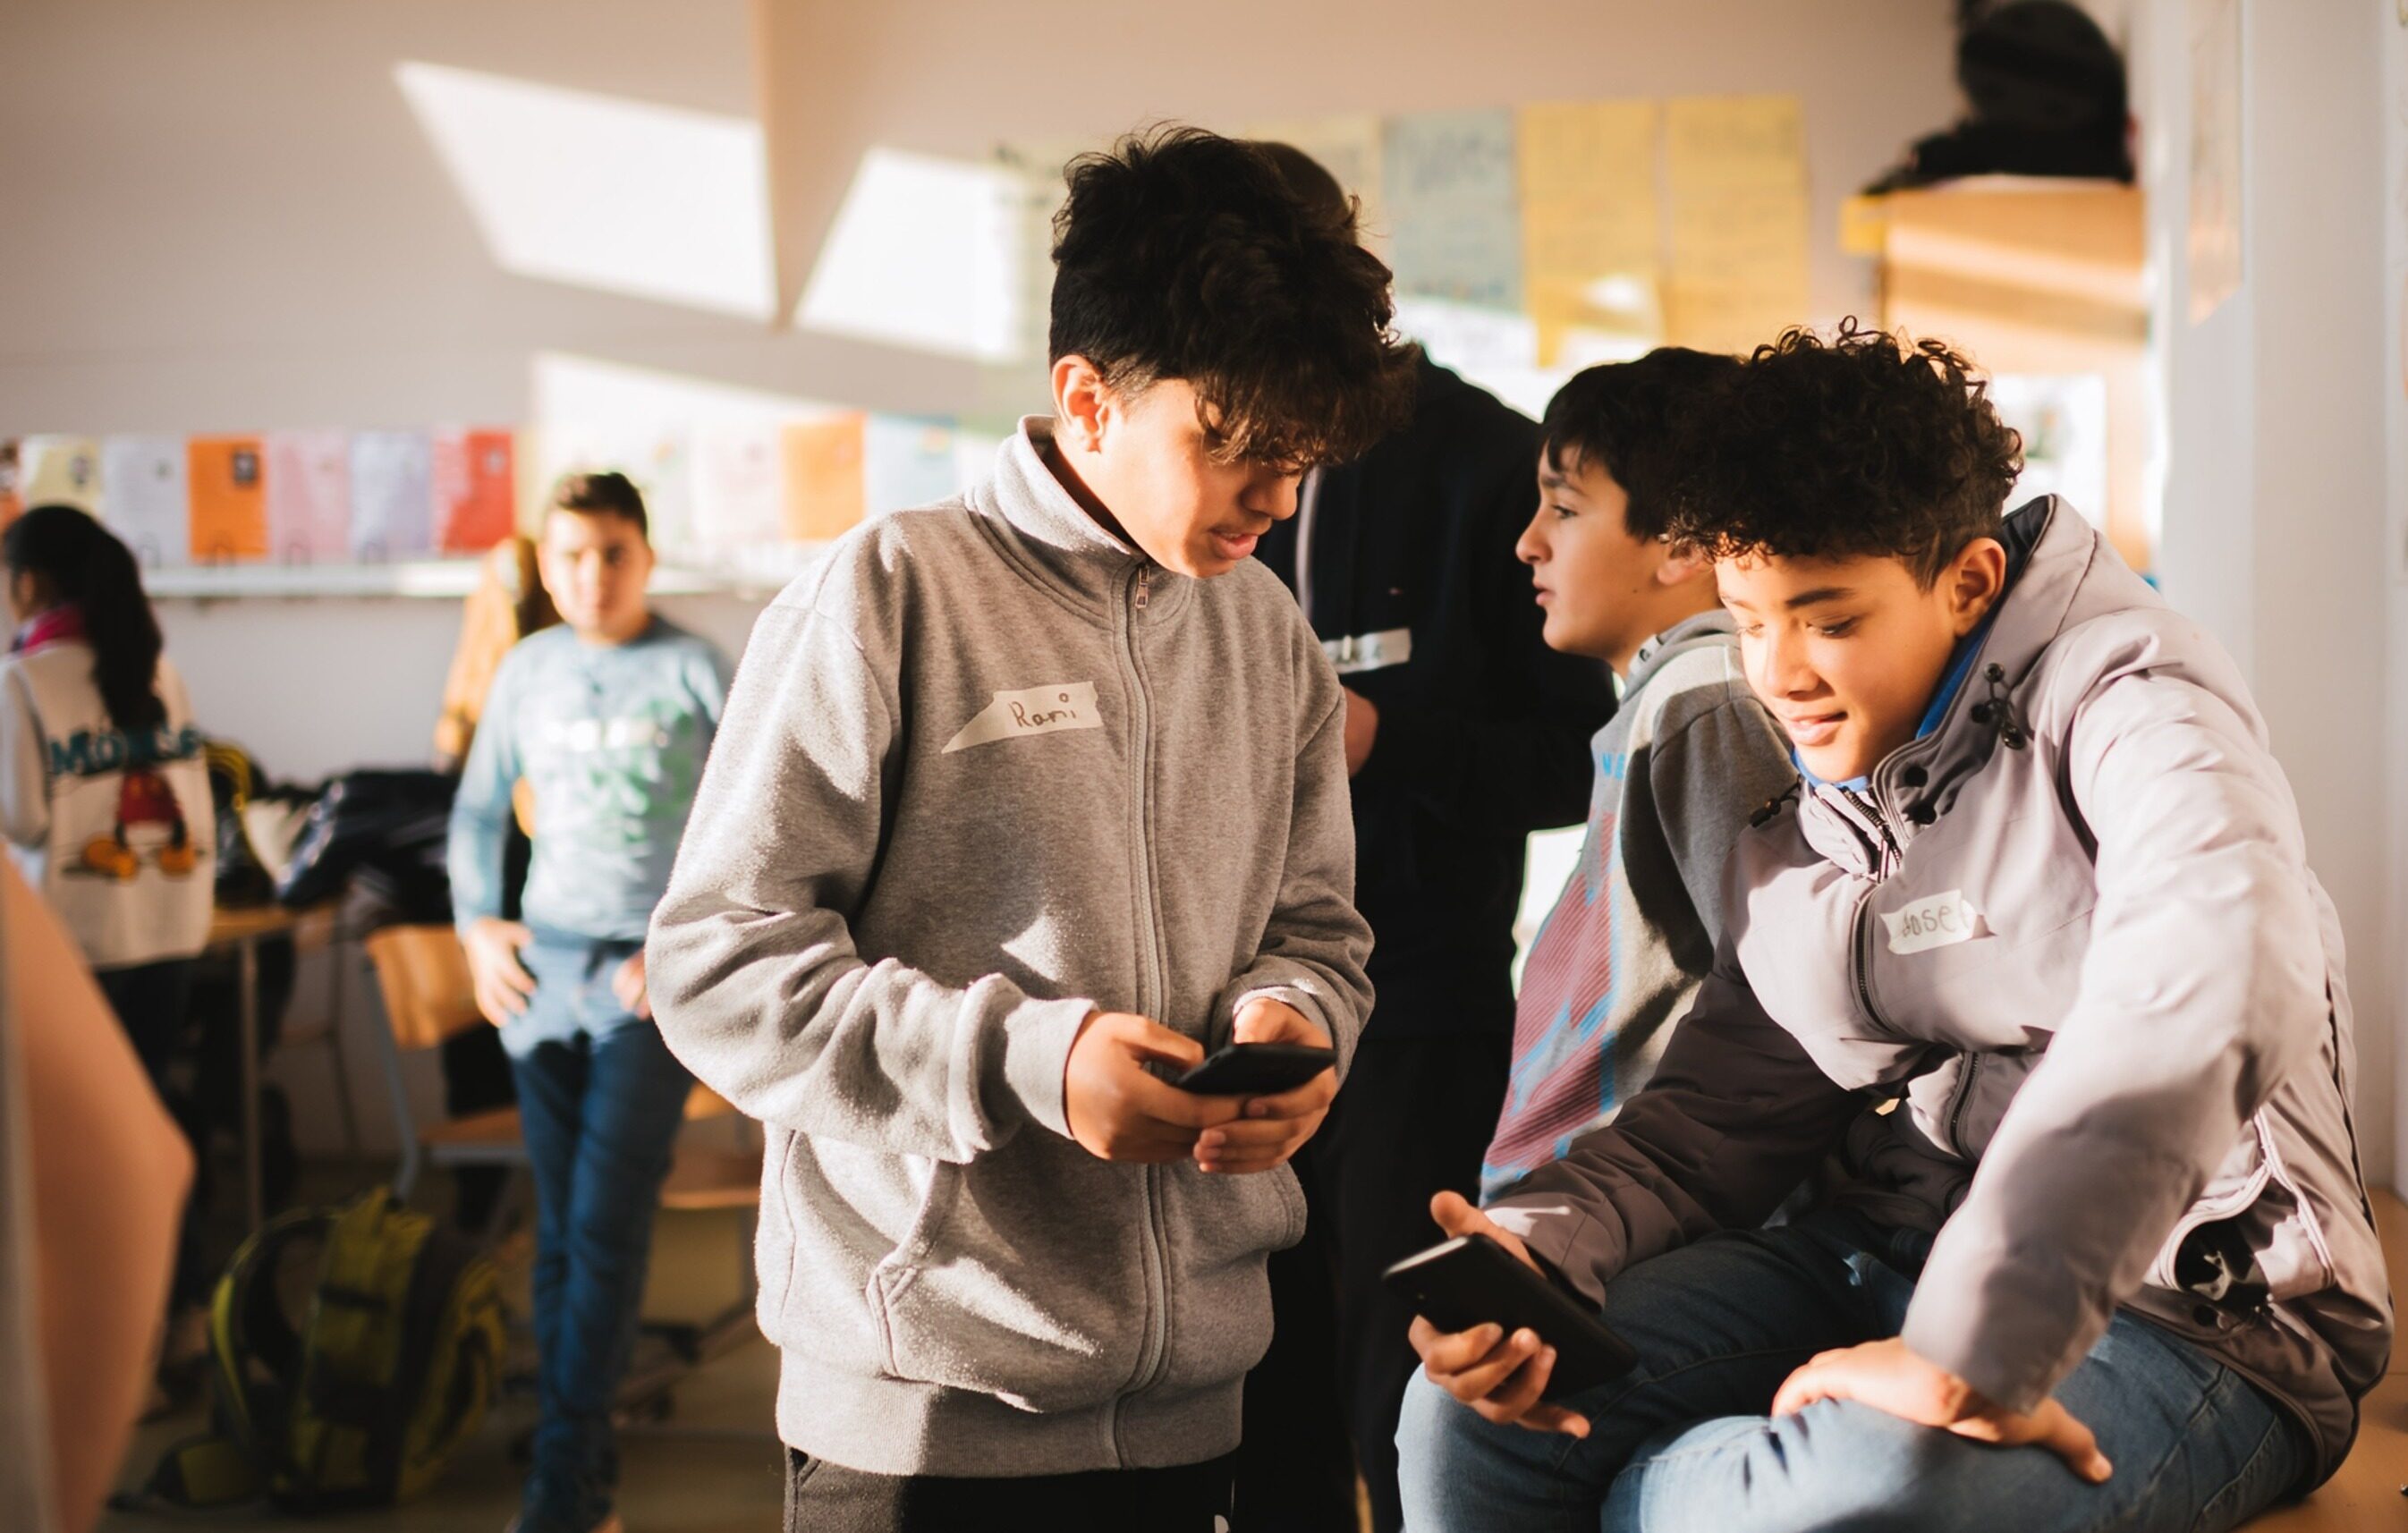 Schüler beschäftigen sich gemeinsam mit Smartphones